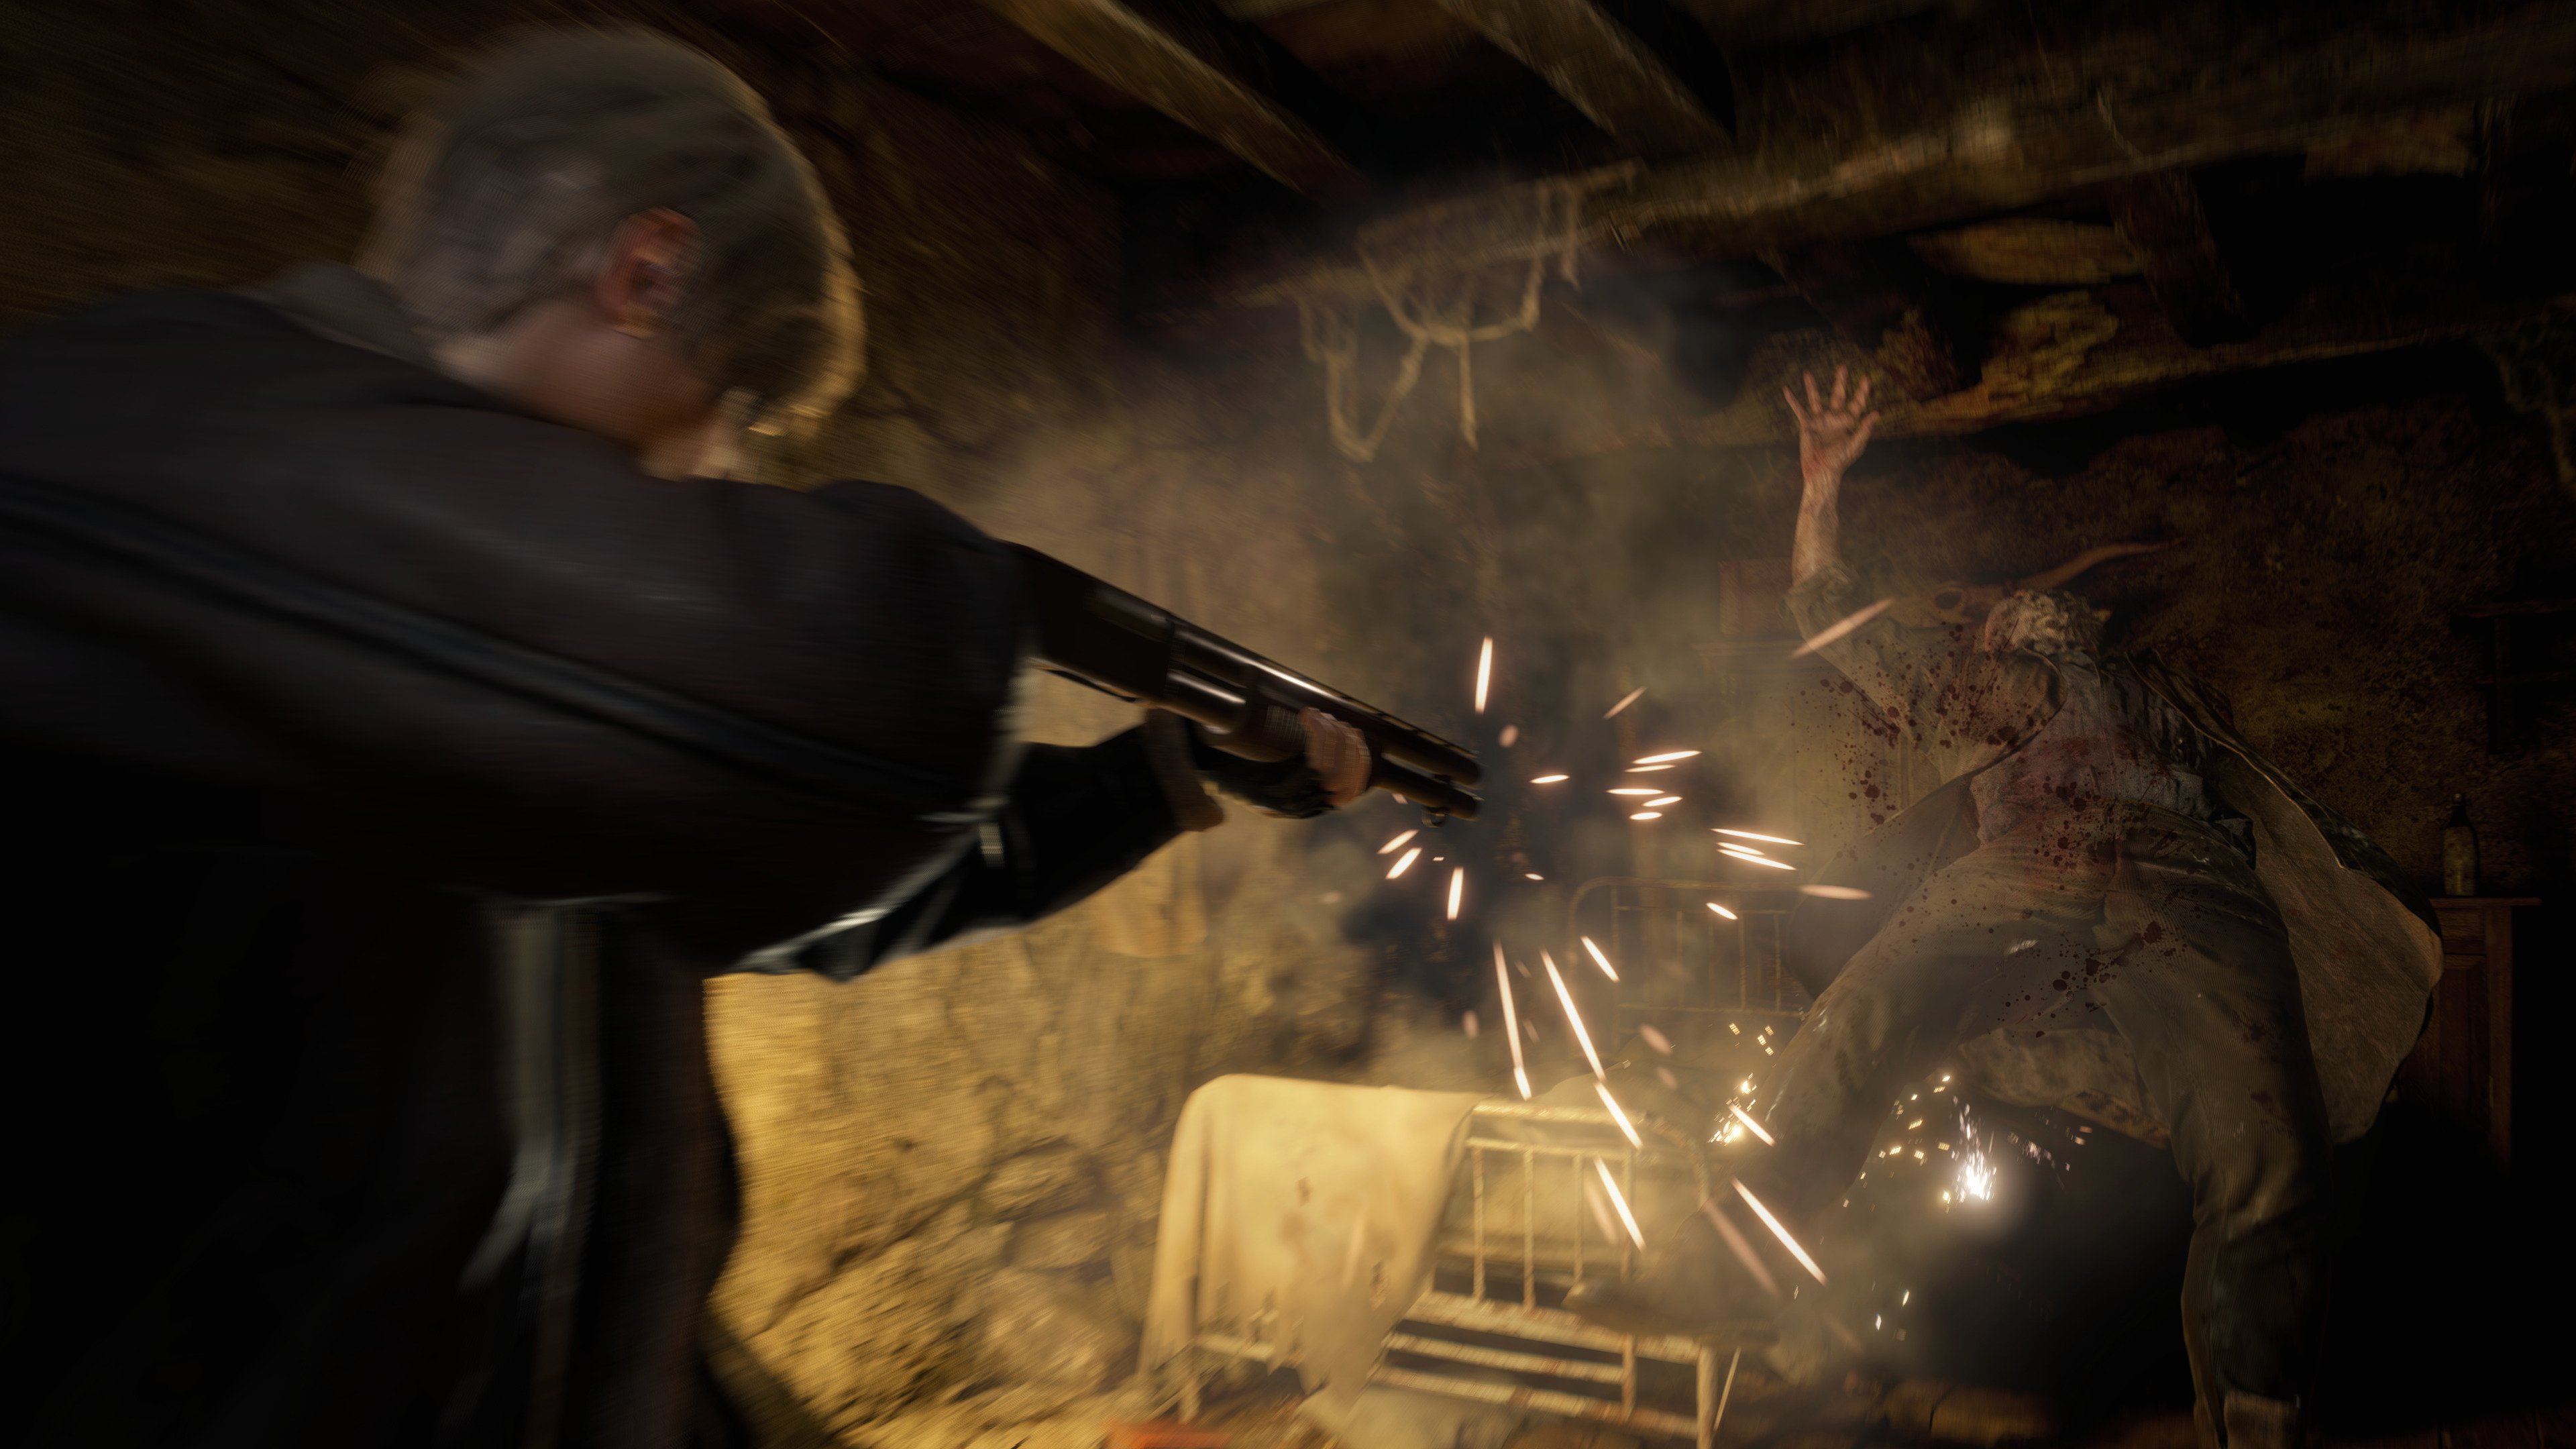 Win 1 of 3 Steam keys for Resident Evil 4 Remake